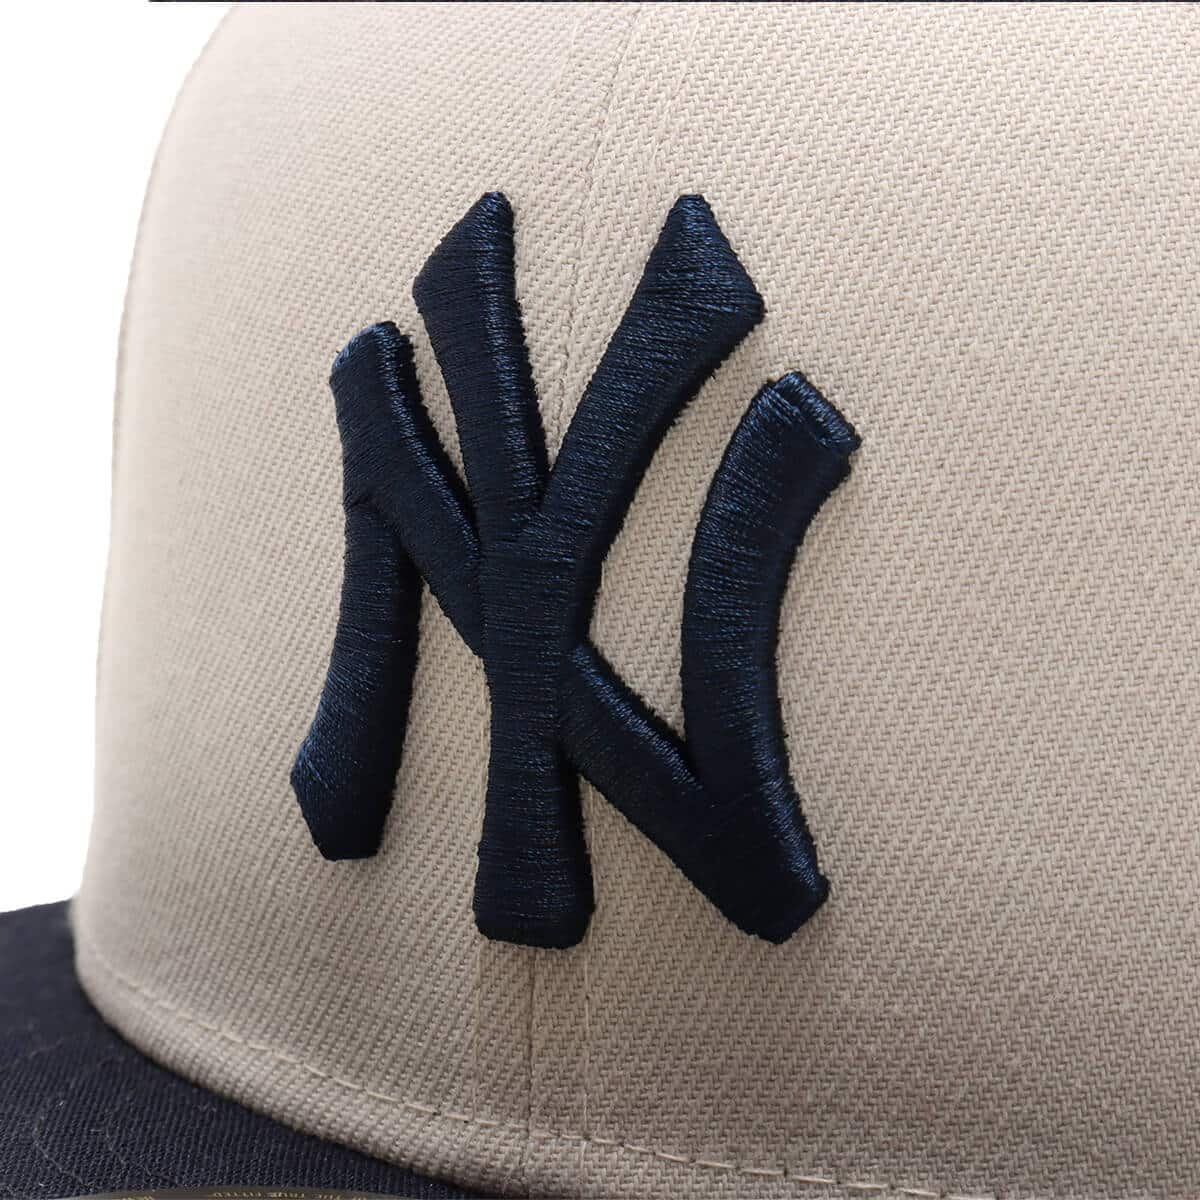 NEW ERA 59FIFTY Powered by GORO NAKATSUGAWA New York Yankees STONE 